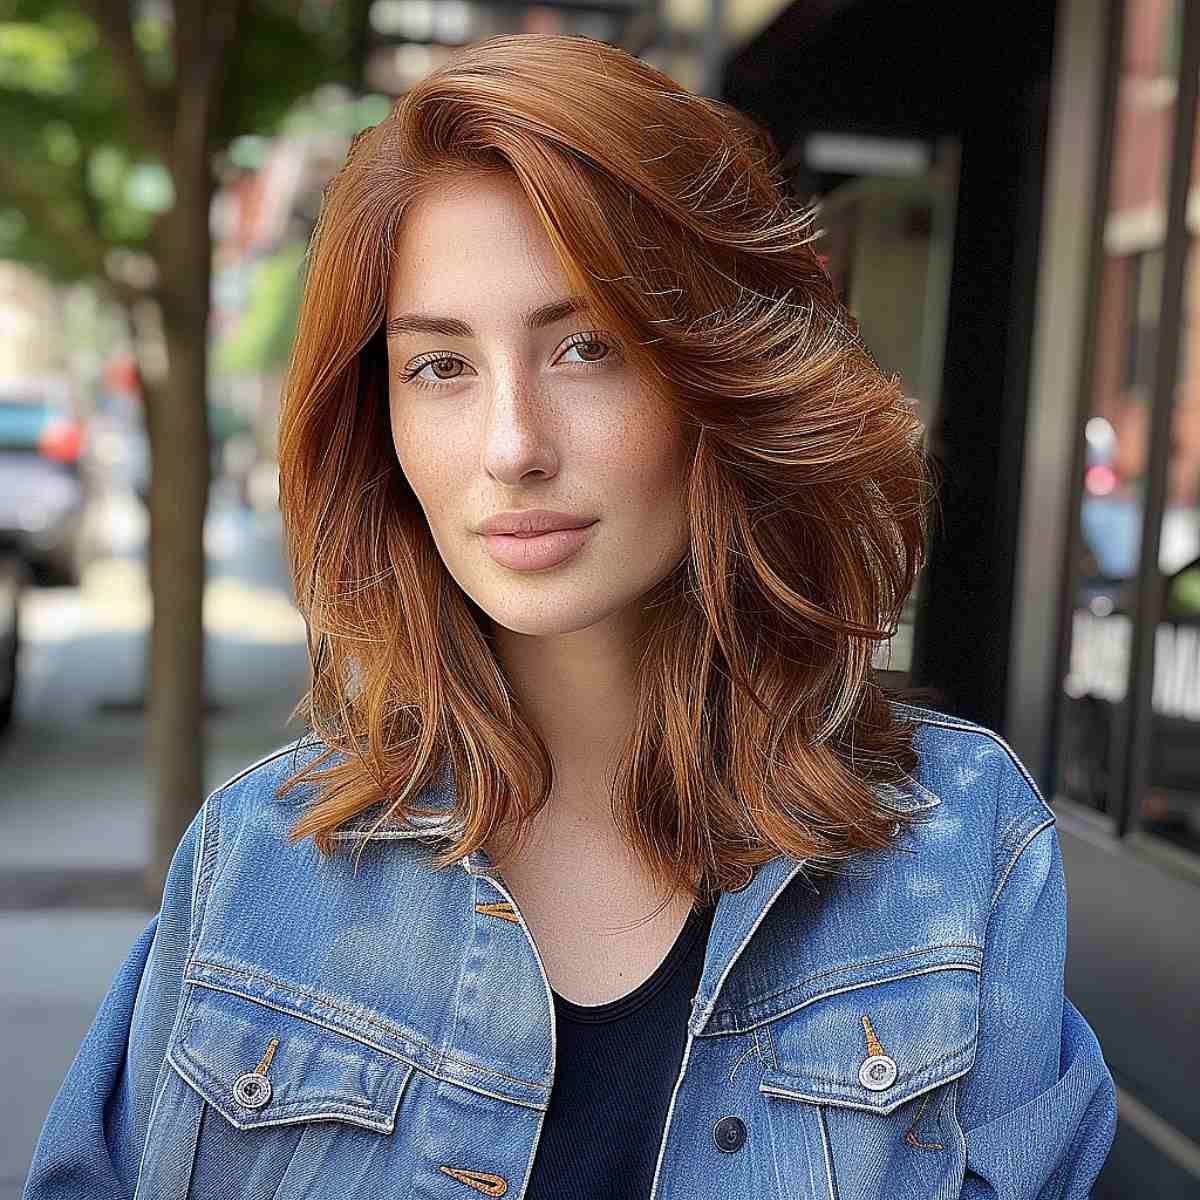 61 Best Auburn Hair Color Ideas for Every Skin Tone